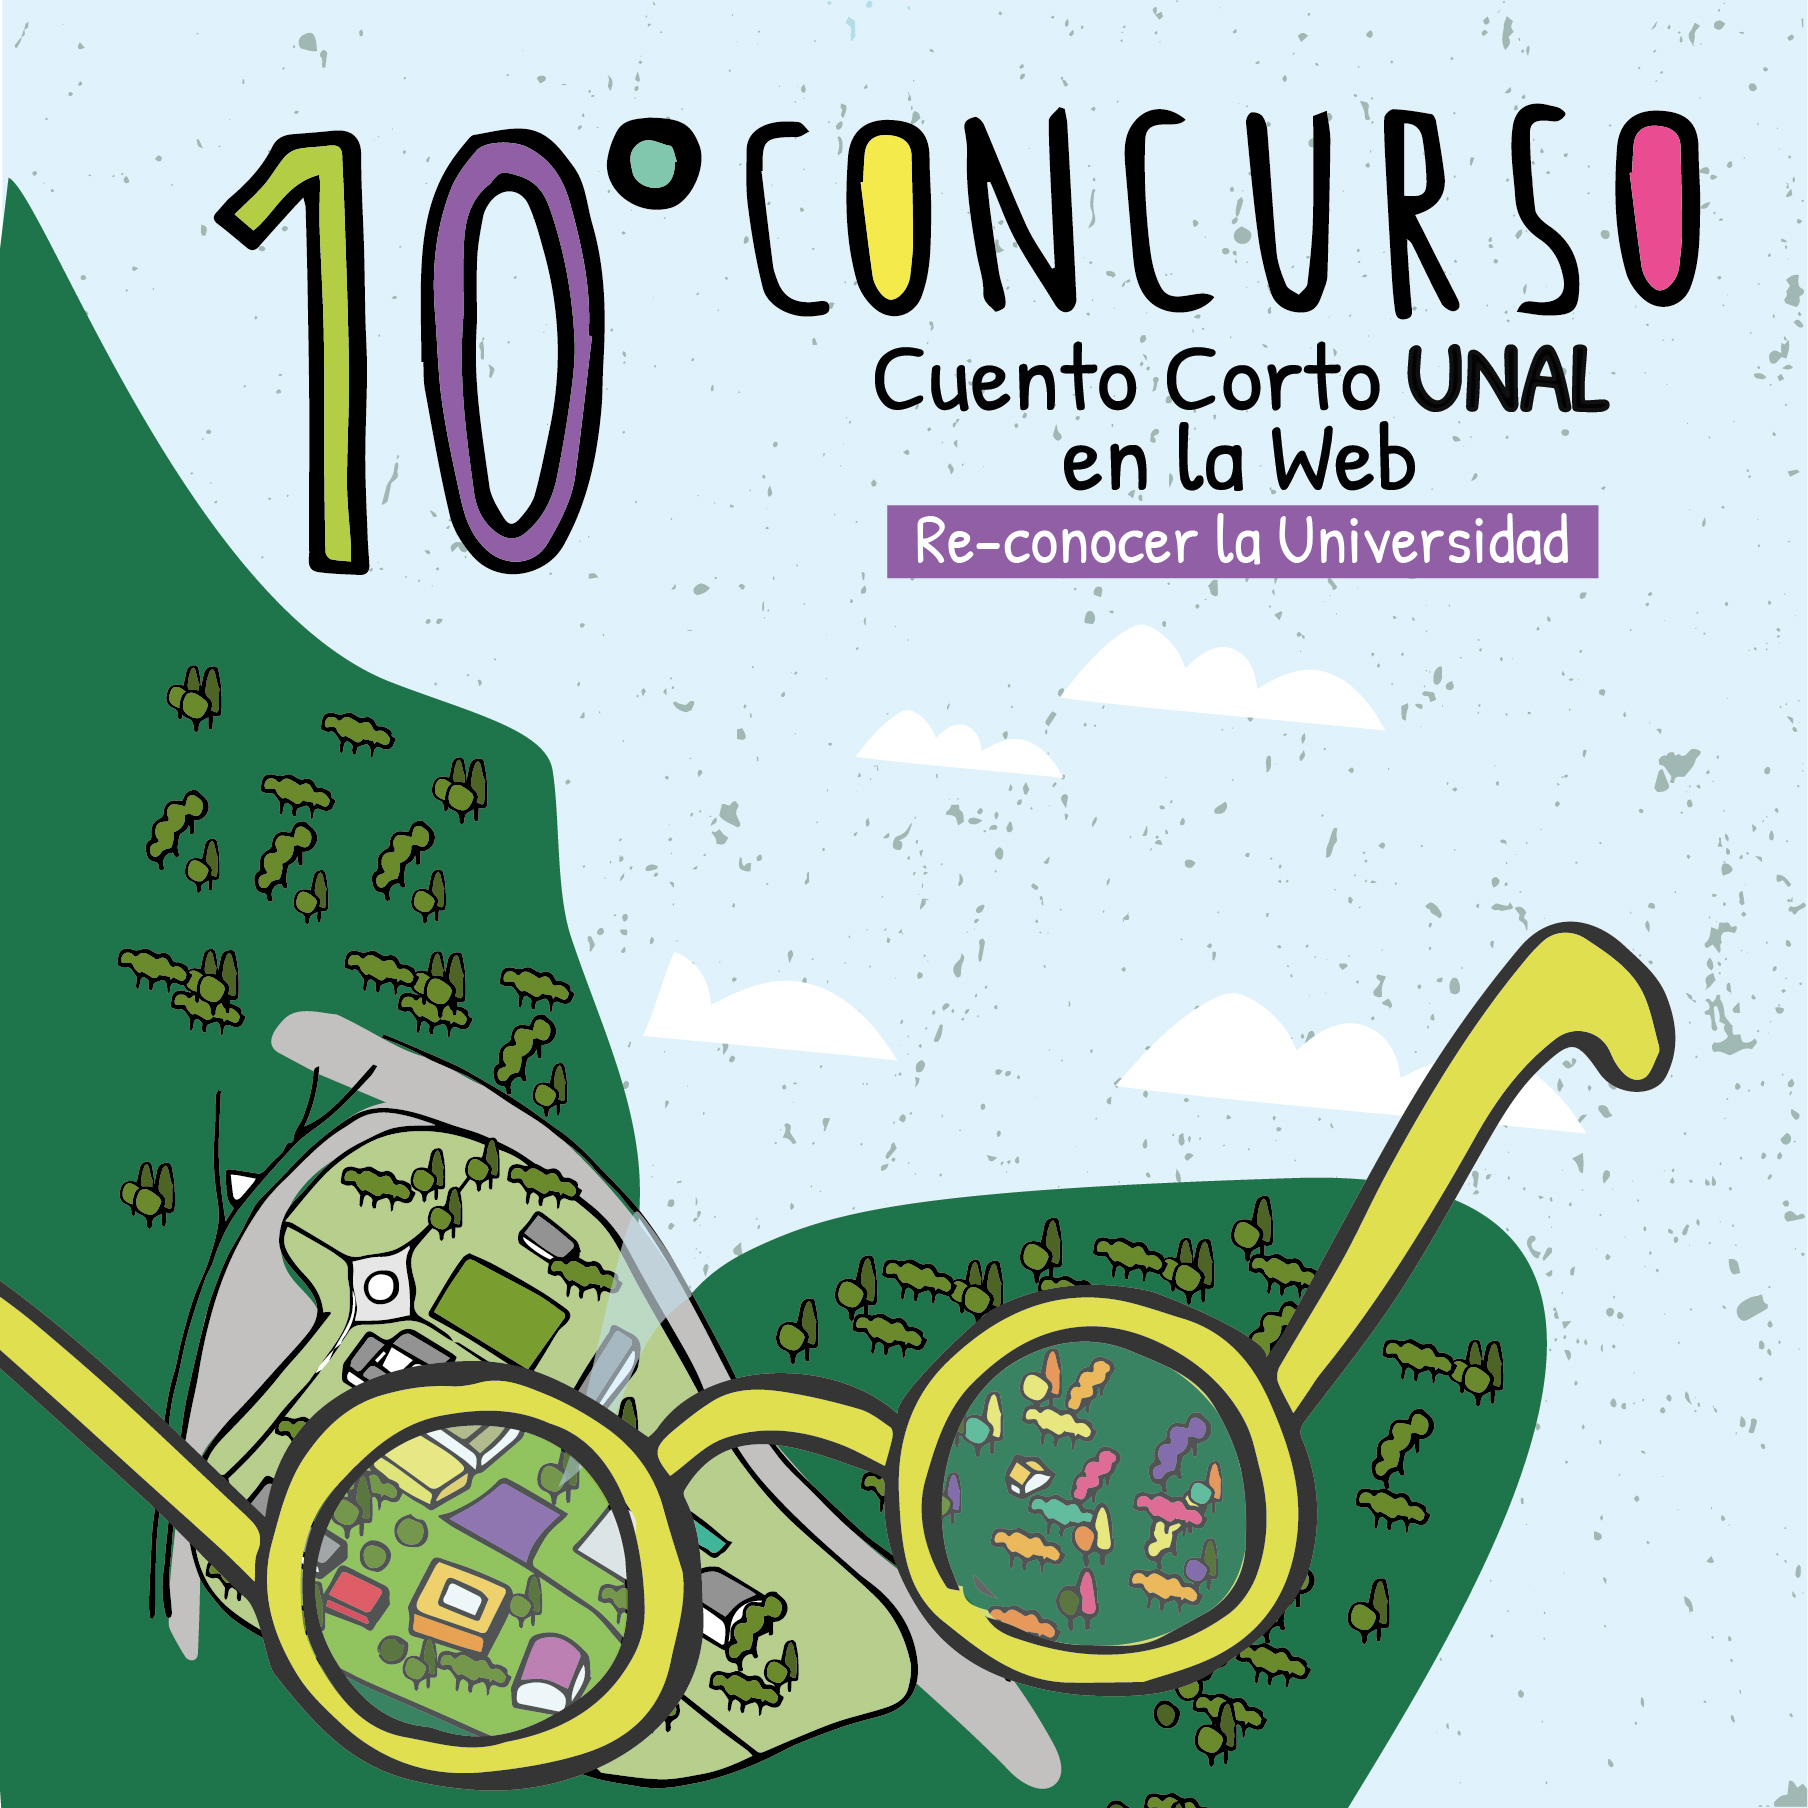 10ConcursoDeCuentoCorto 10